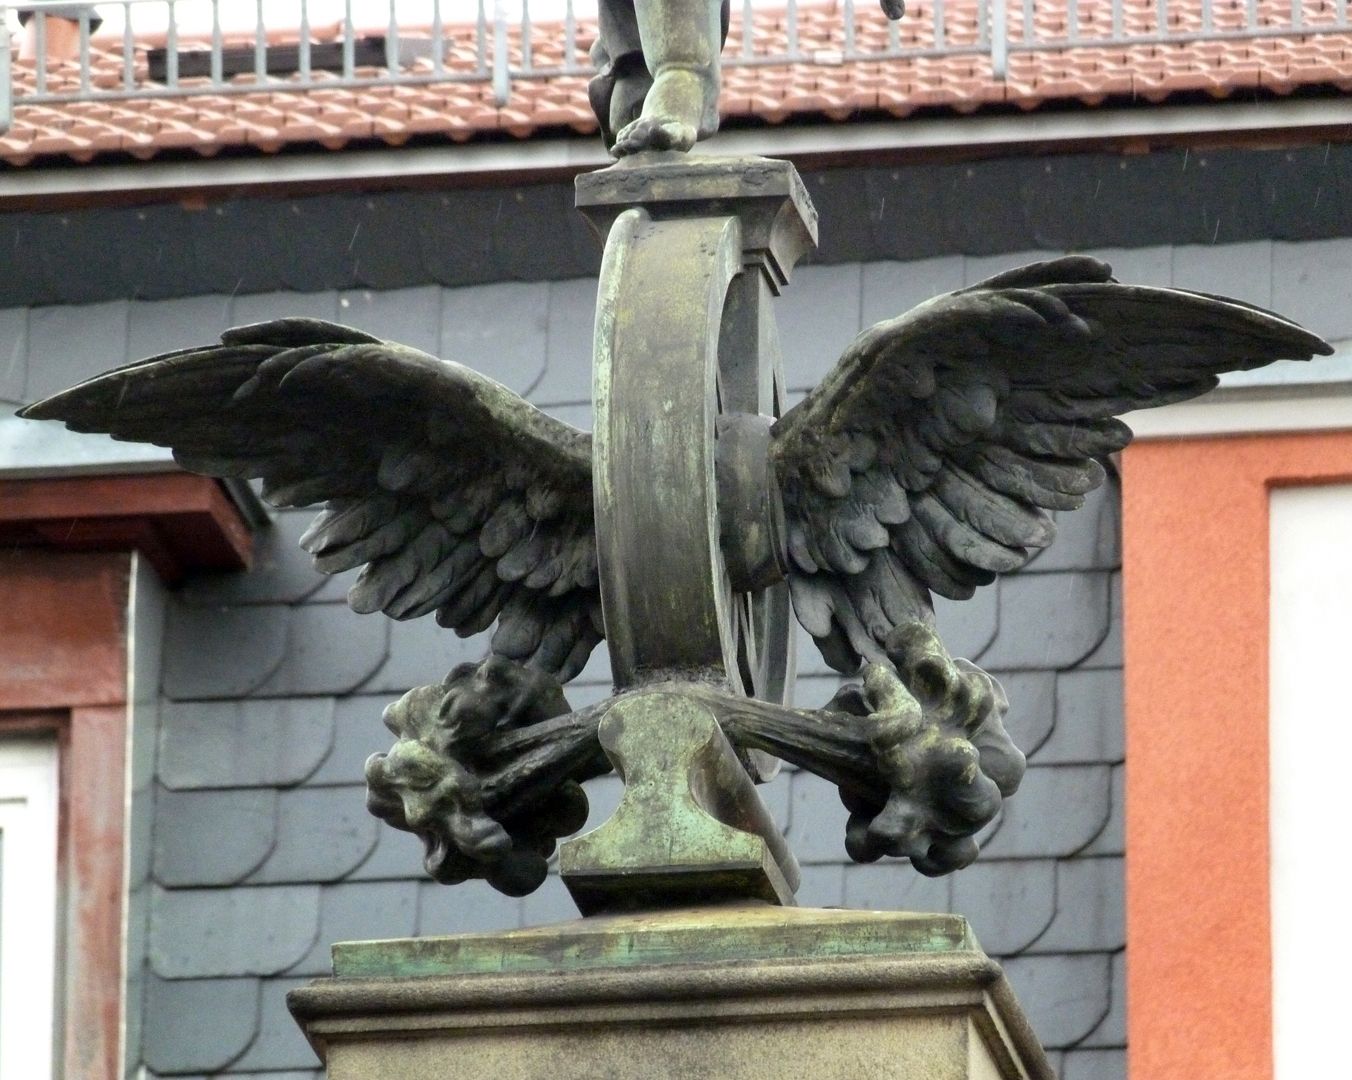 Ludwigseisenbahn-Denkmal Detailansicht mit geflügeltem Rad als Symbol der Eisenbahn und des Schienenverkehrs, dampfend über einem Stück Schiene